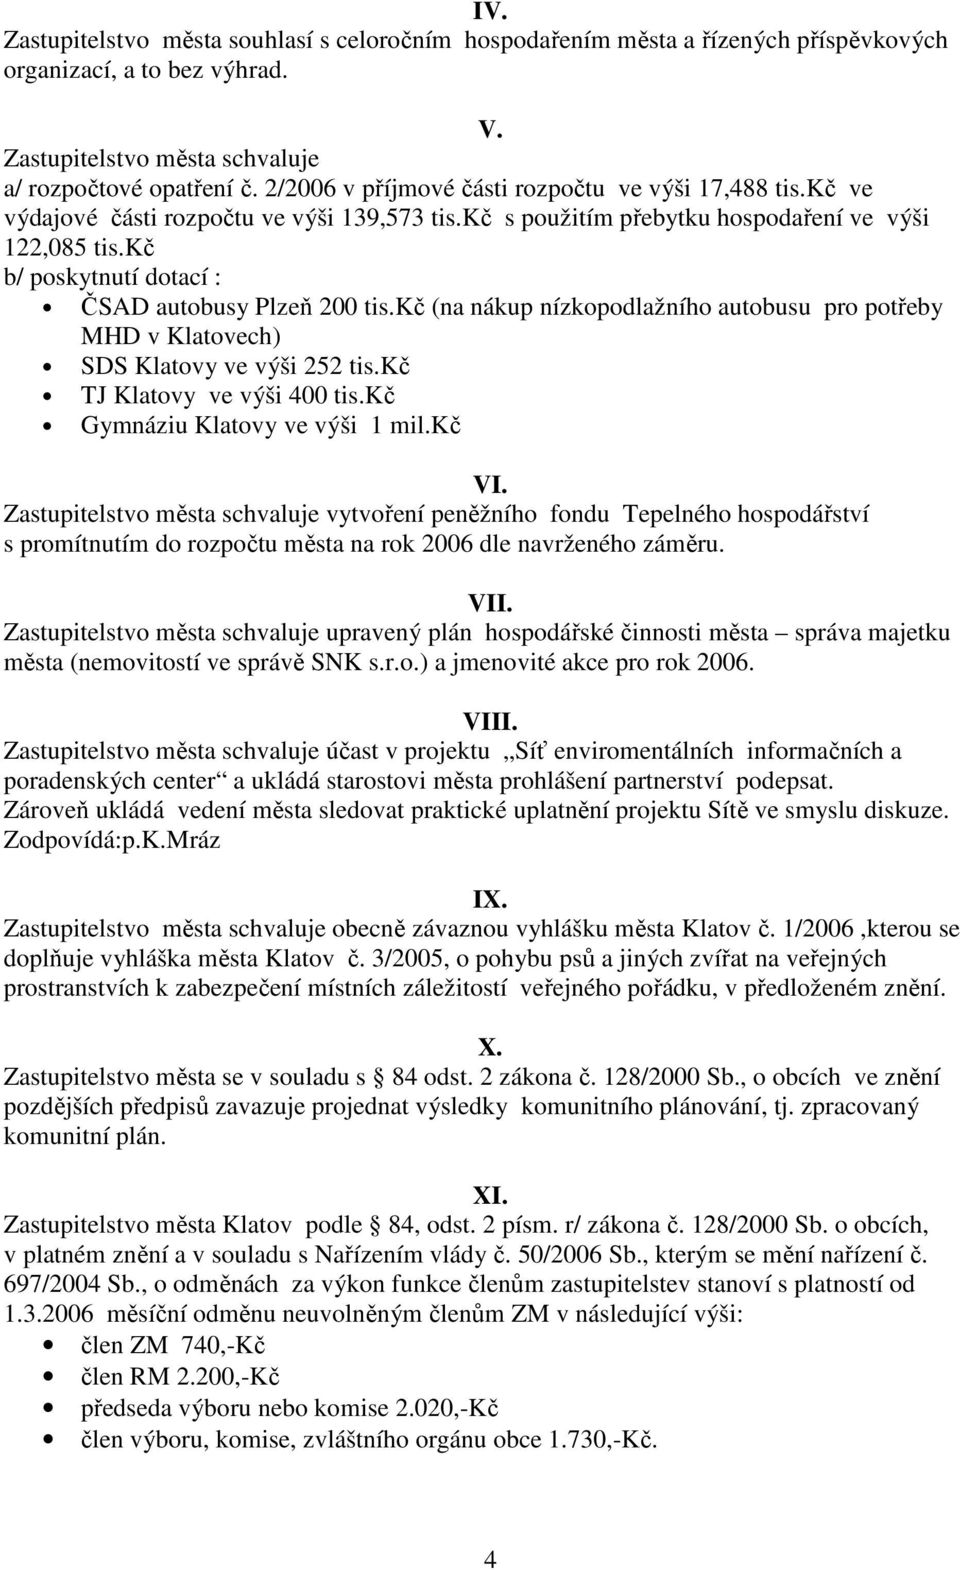 kč b/ poskytnutí dotací : ČSAD autobusy Plzeň 200 tis.kč (na nákup nízkopodlažního autobusu pro potřeby MHD v Klatovech) SDS Klatovy ve výši 252 tis.kč TJ Klatovy ve výši 400 tis.